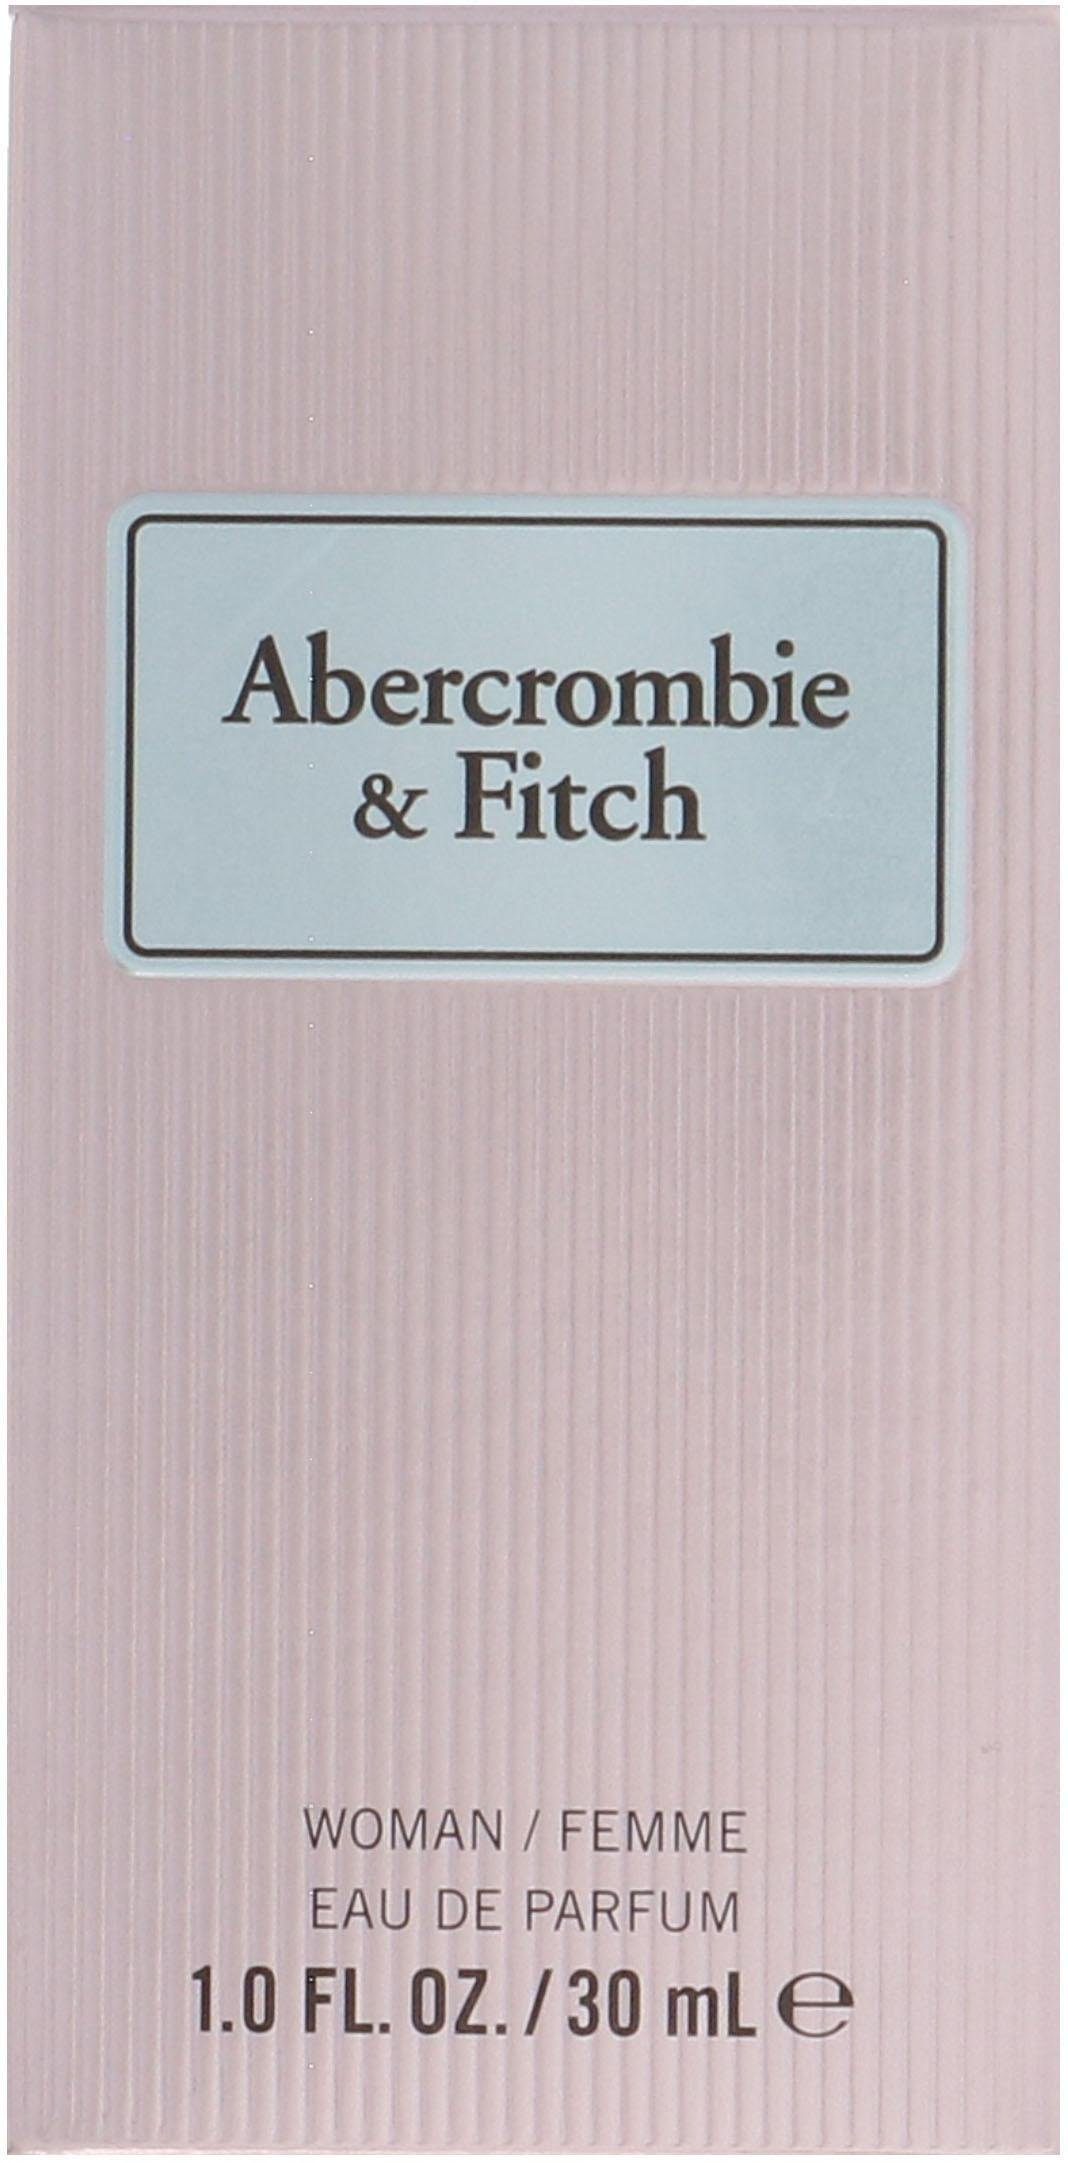 Abercrombie & Parfum First de Eau Women Fitch Instinct